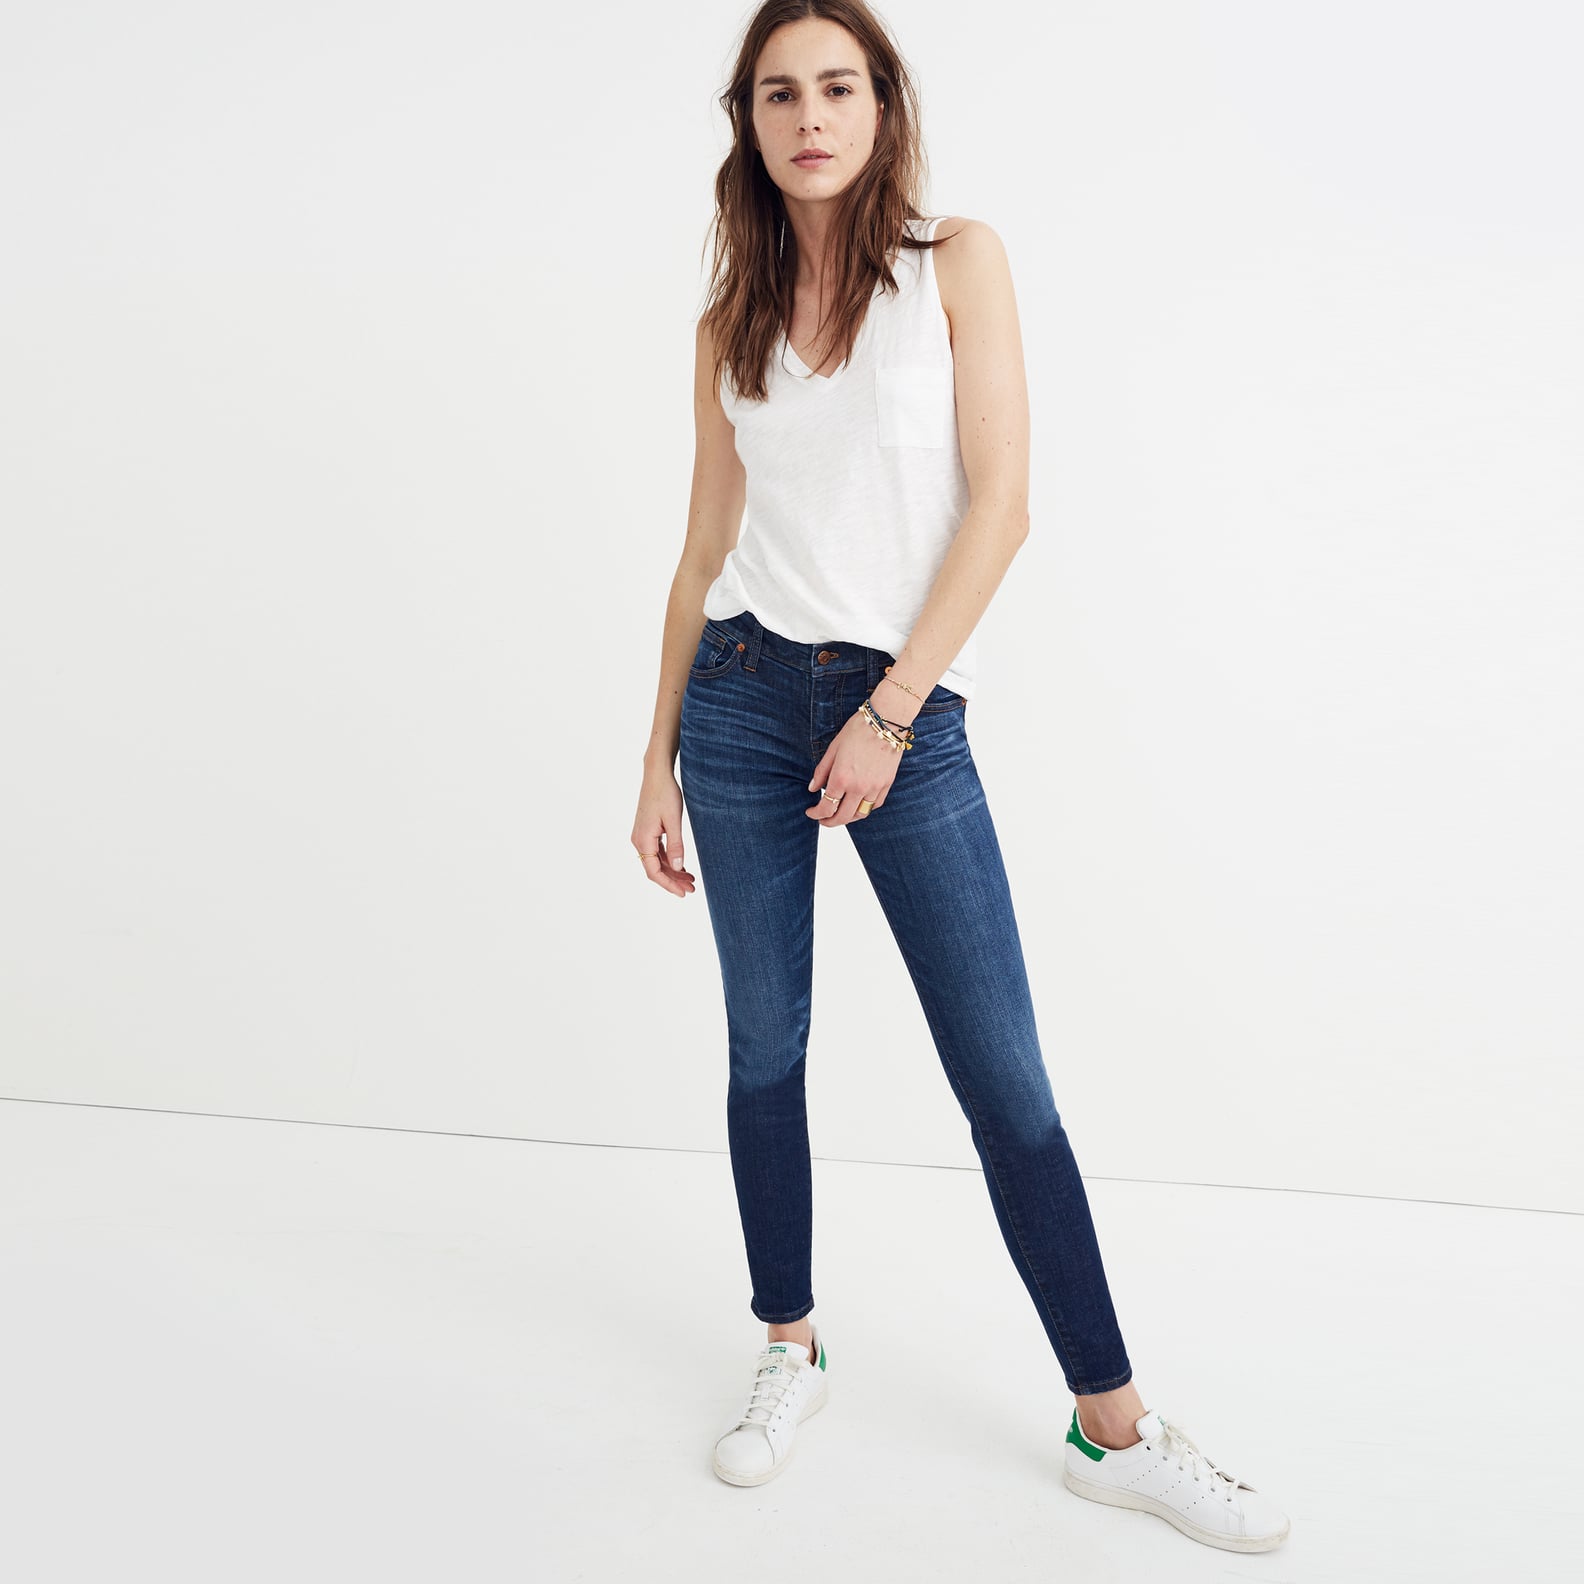 Jean Size Guide | POPSUGAR Fashion